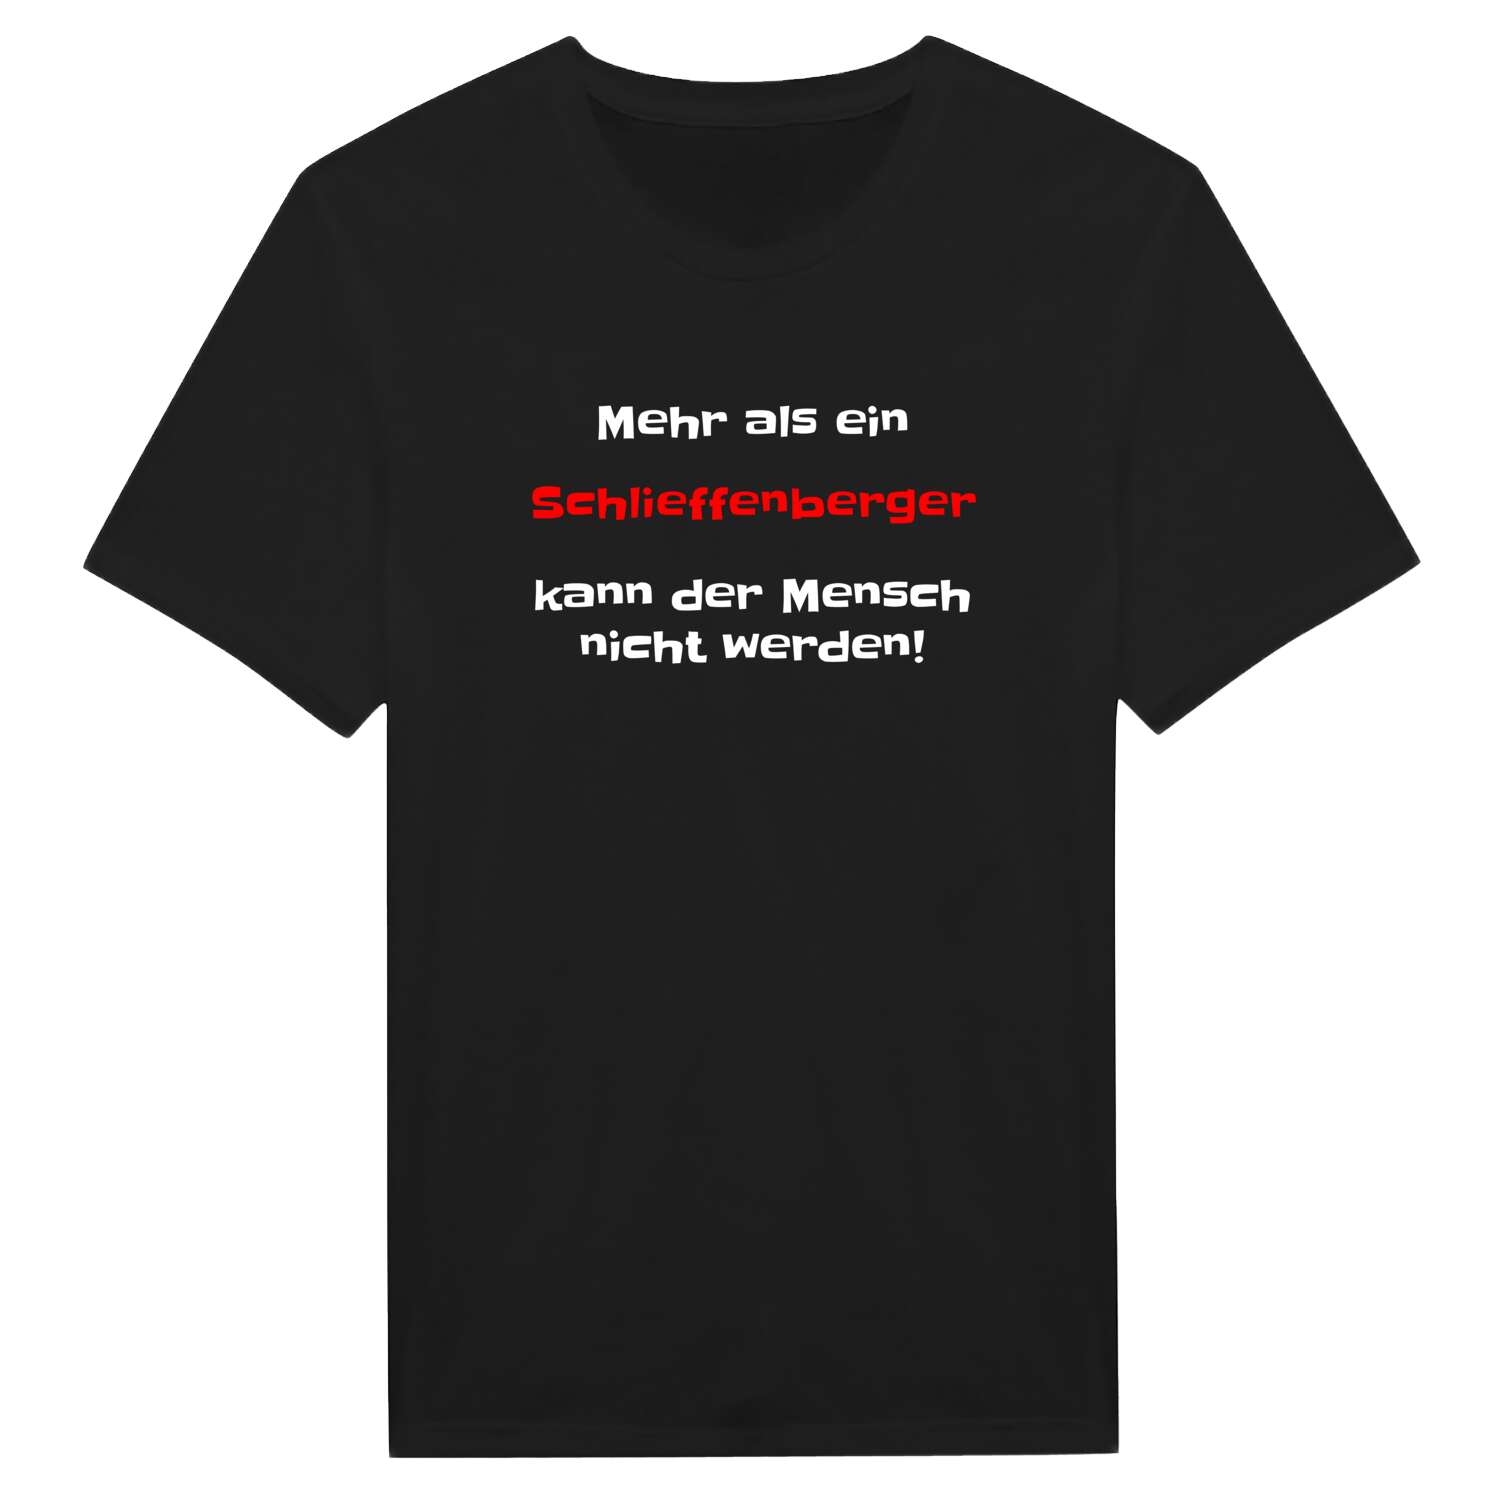 Schlieffenberg T-Shirt »Mehr als ein«